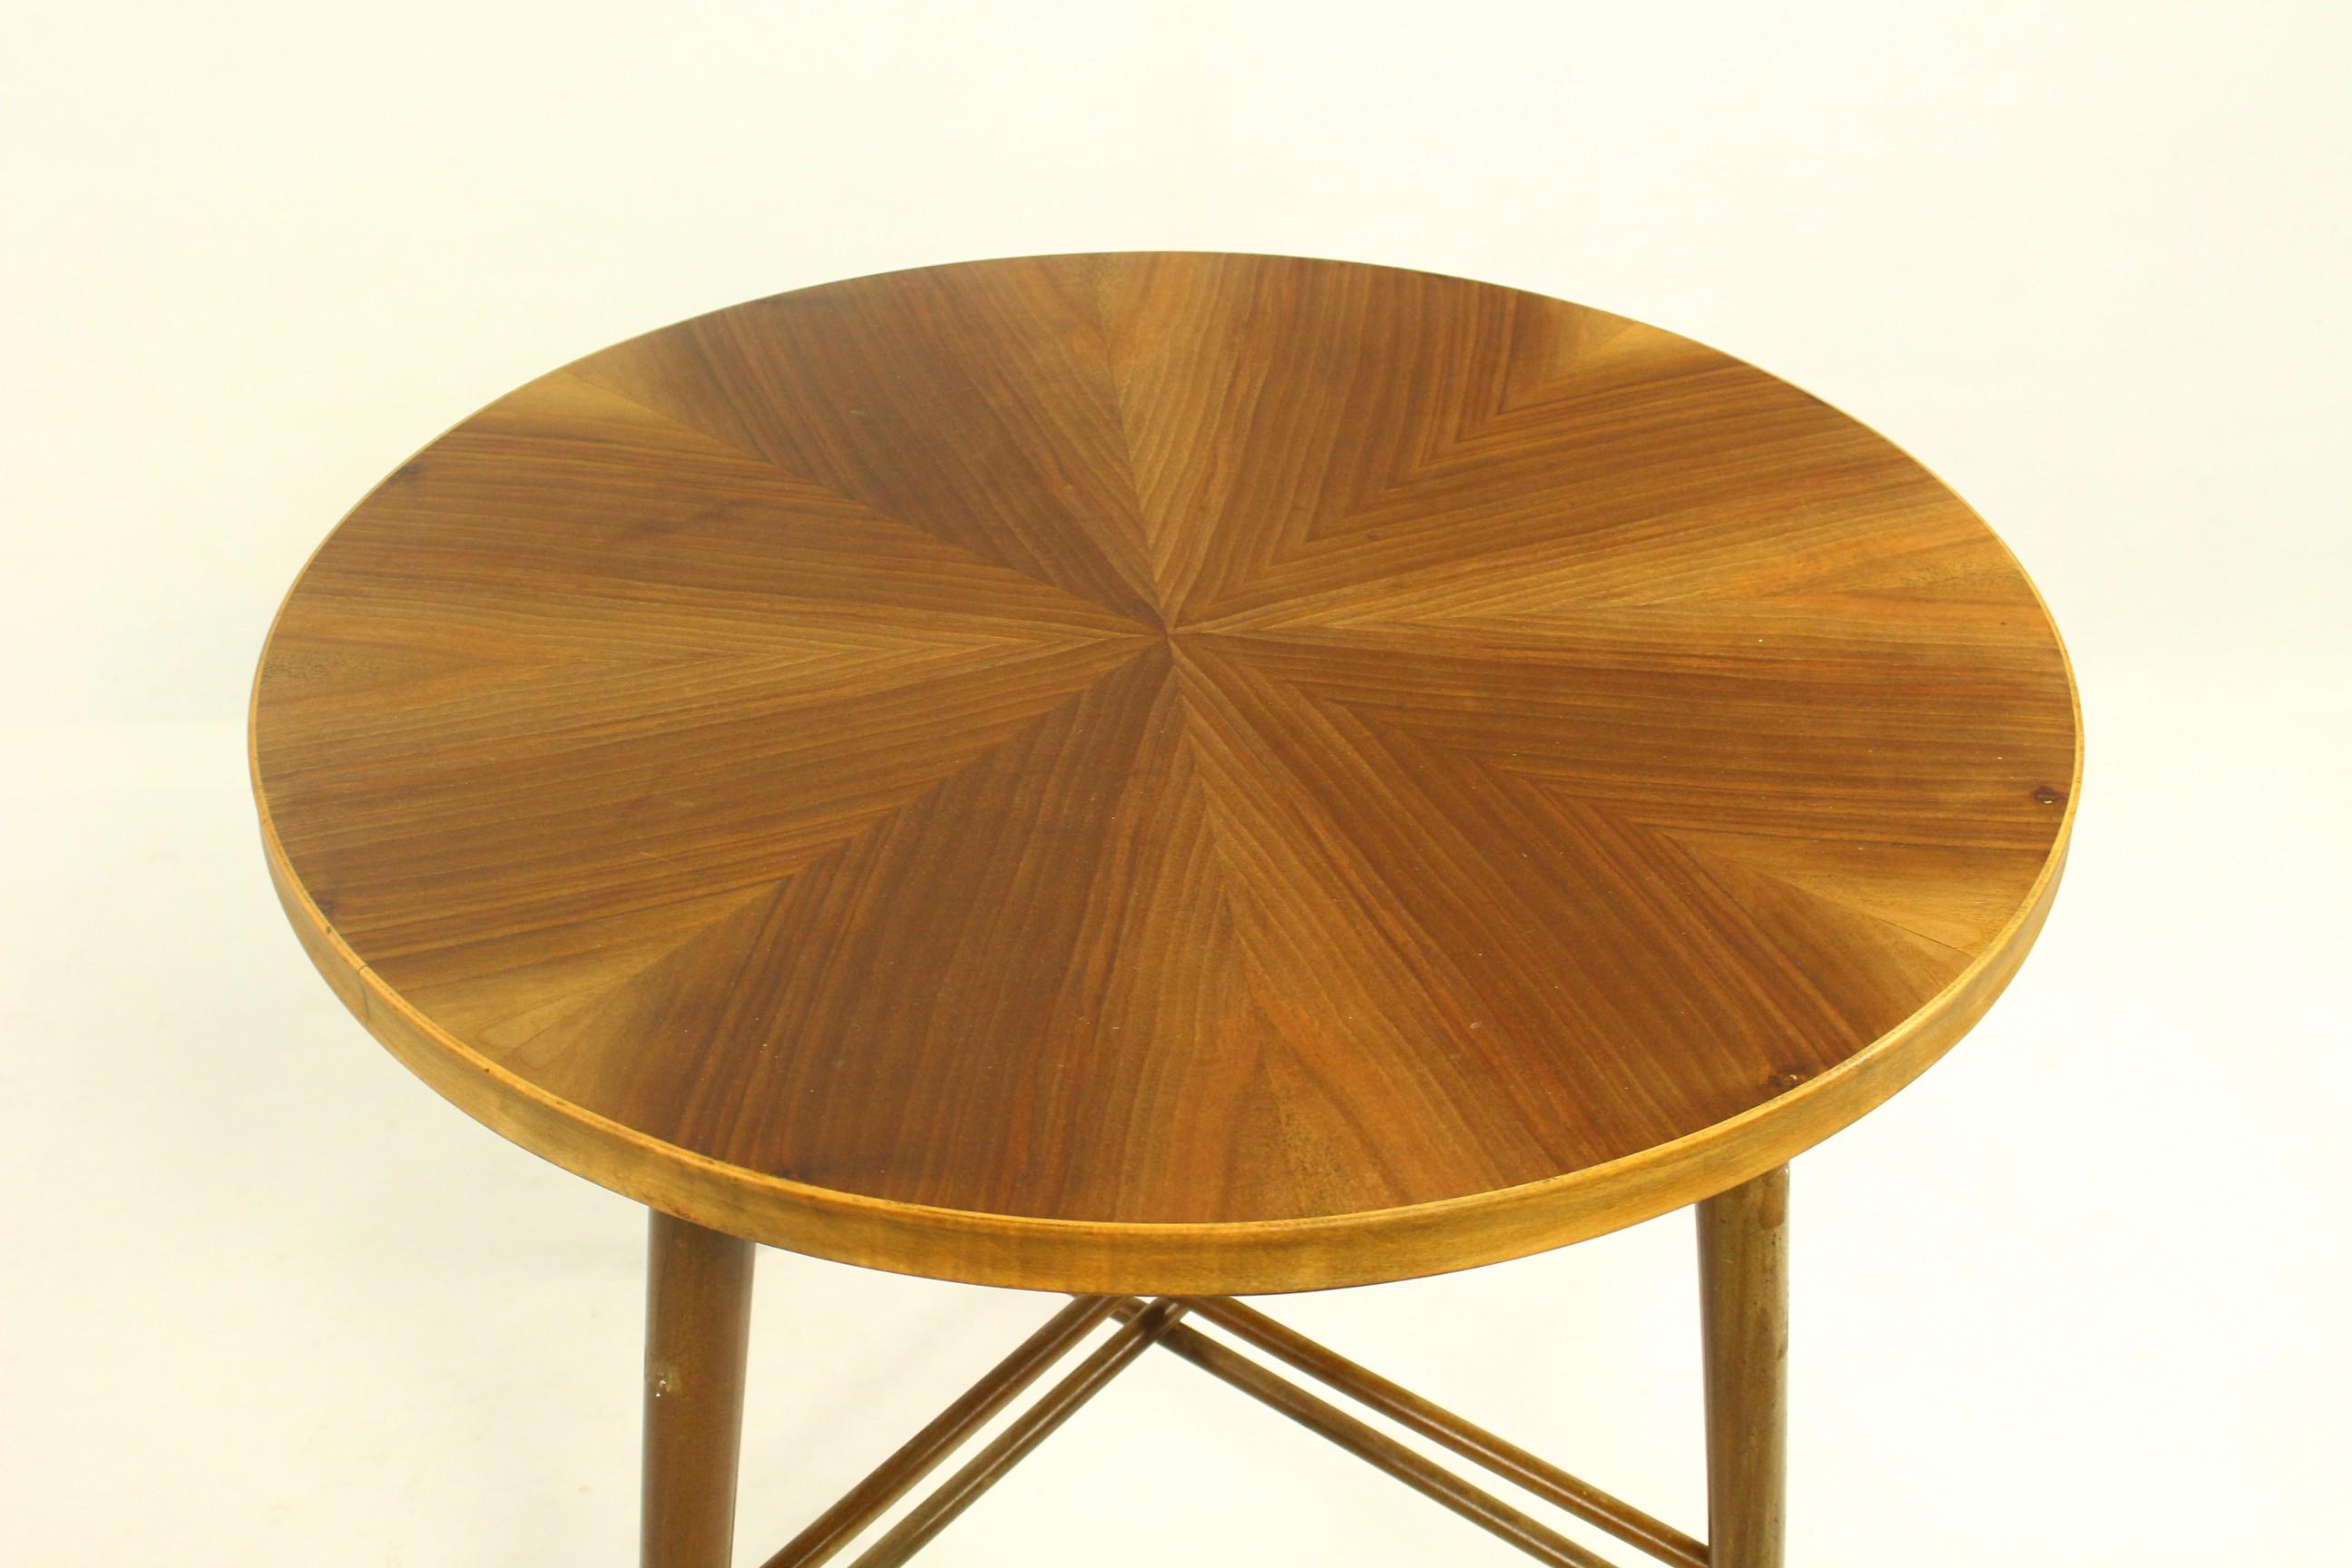 Ein schöner runder dänischer Couchtisch aus den 1970er Jahren.
Schöne Holzmaserung auf der Platte, sichtbare Gebrauchsspuren an den Beinen.
Der Tisch wird für den Versand demontiert.